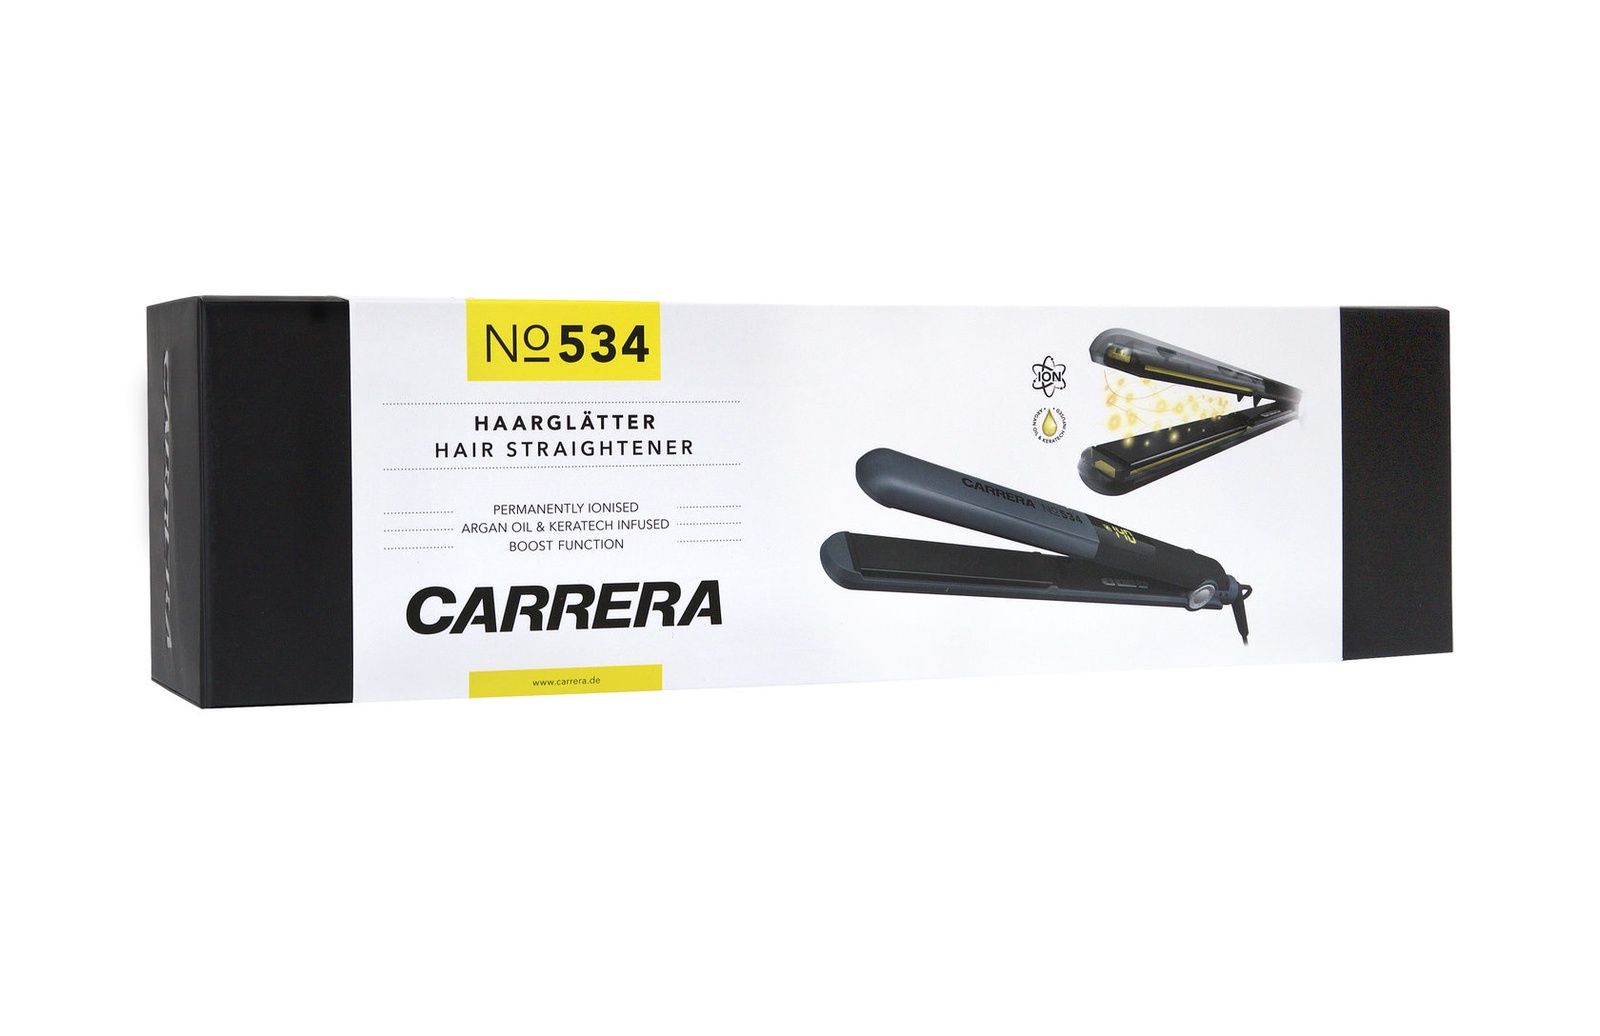    Carrera CRR-534, 15221011, 